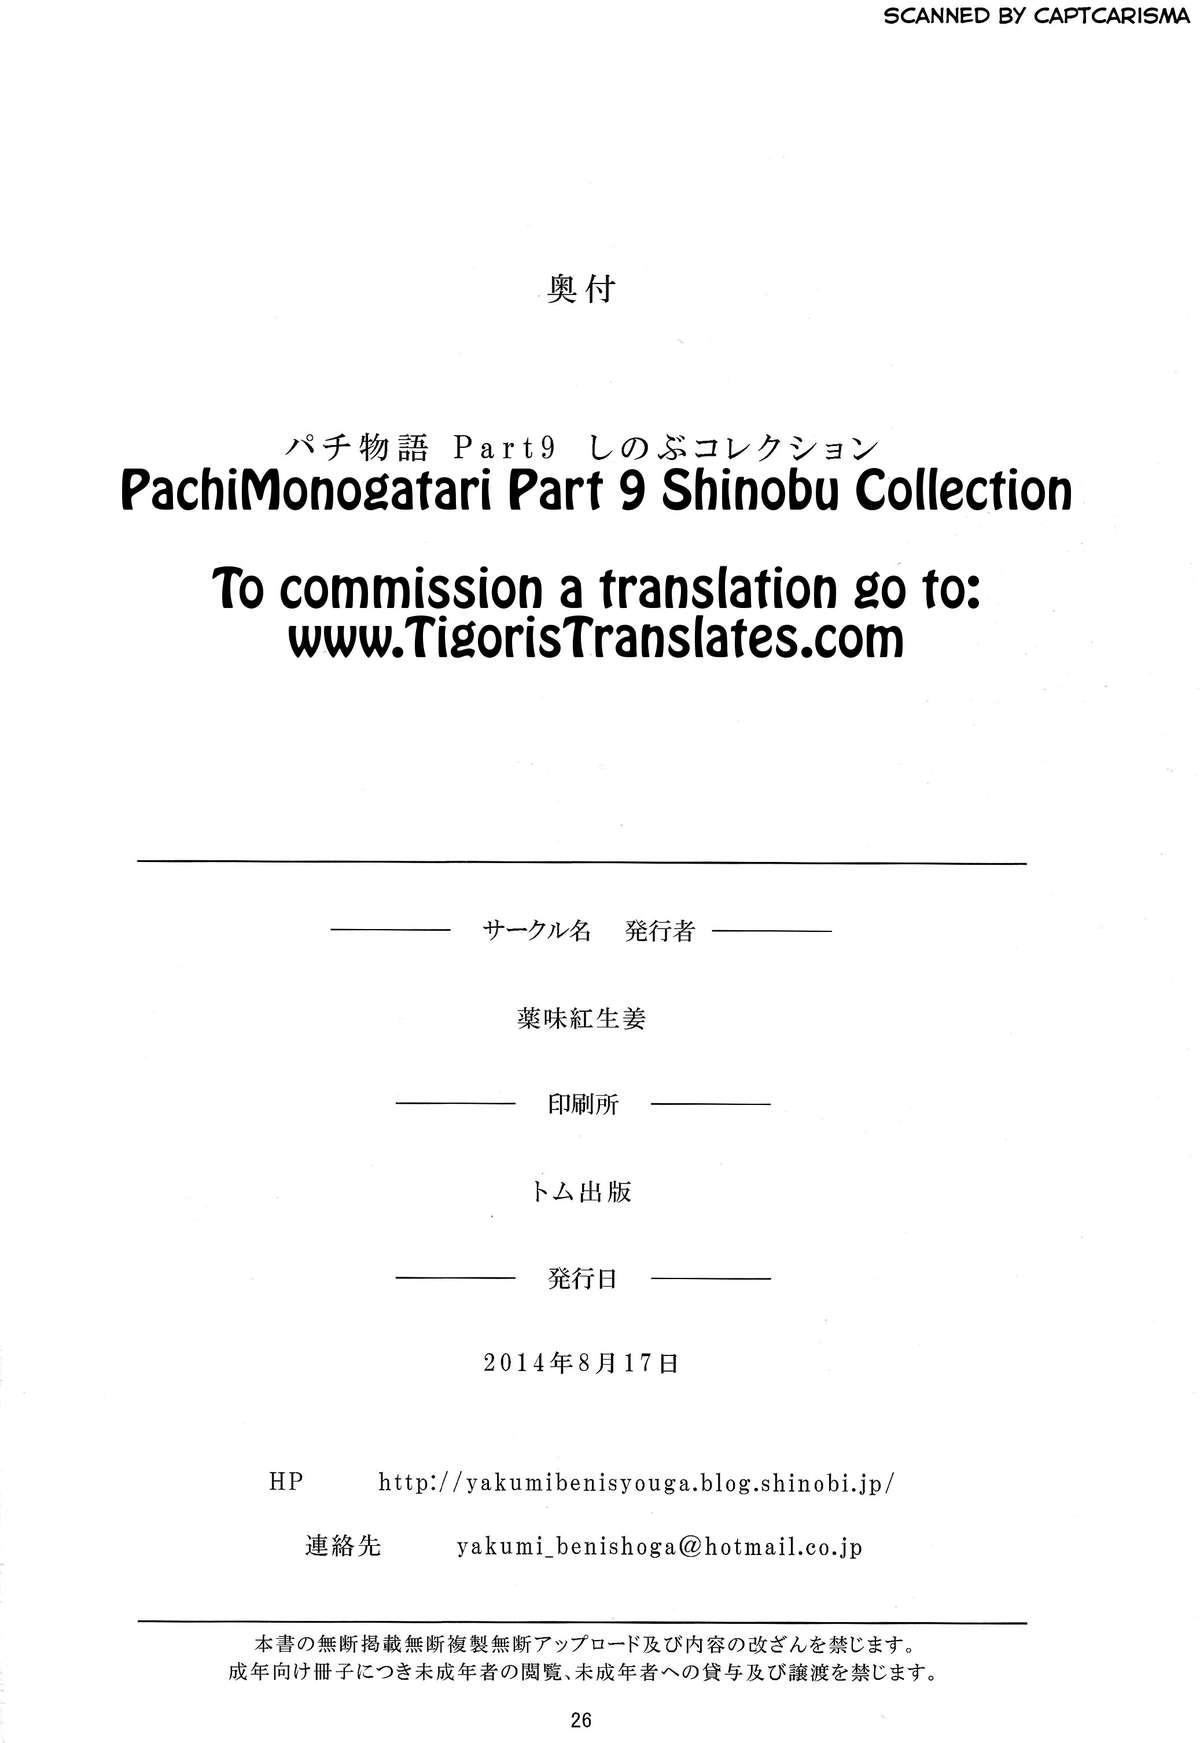 Pachimonogatari: Shinobu Collection 25